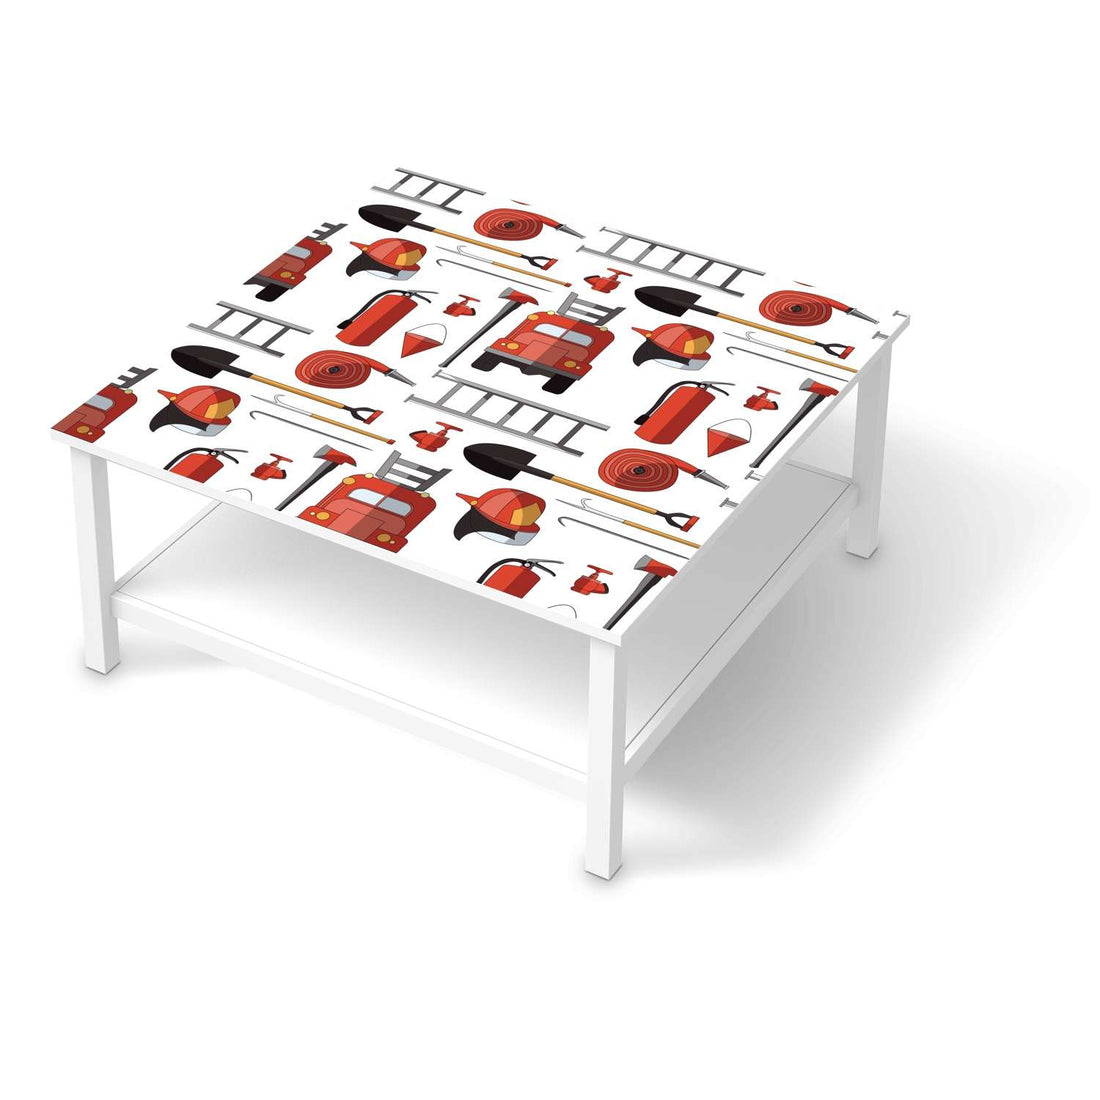 Klebefolie für Möbel Firefighter - IKEA Hemnes Couchtisch 90x90 cm  - weiss